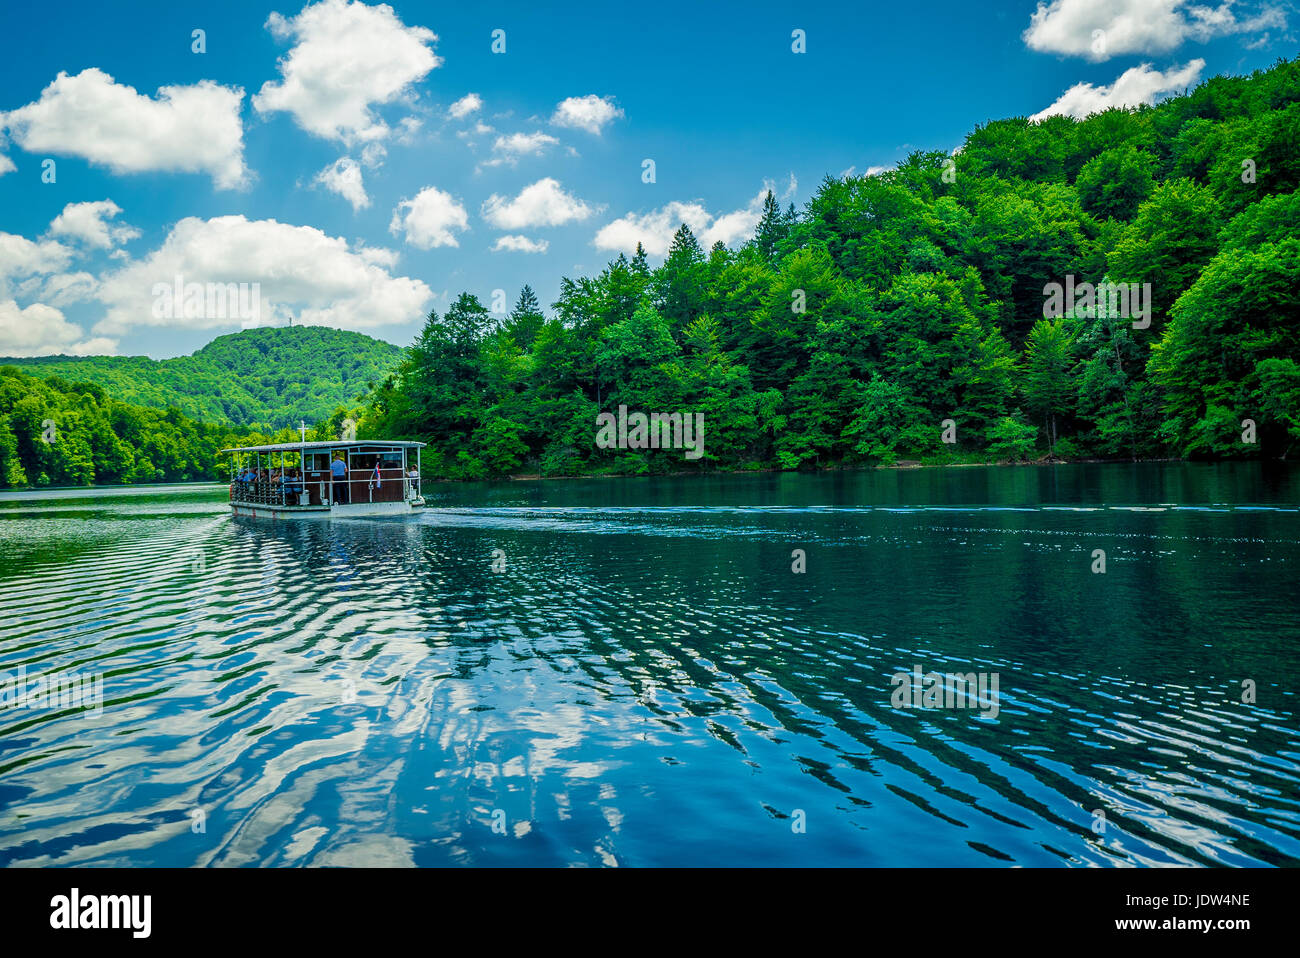 El lago más grande del Parque Nacional de los Lagos de Plitvice conecta los lagos superior e inferior. Los turistas toman un barco para trasladarse entre ellos. Foto de stock